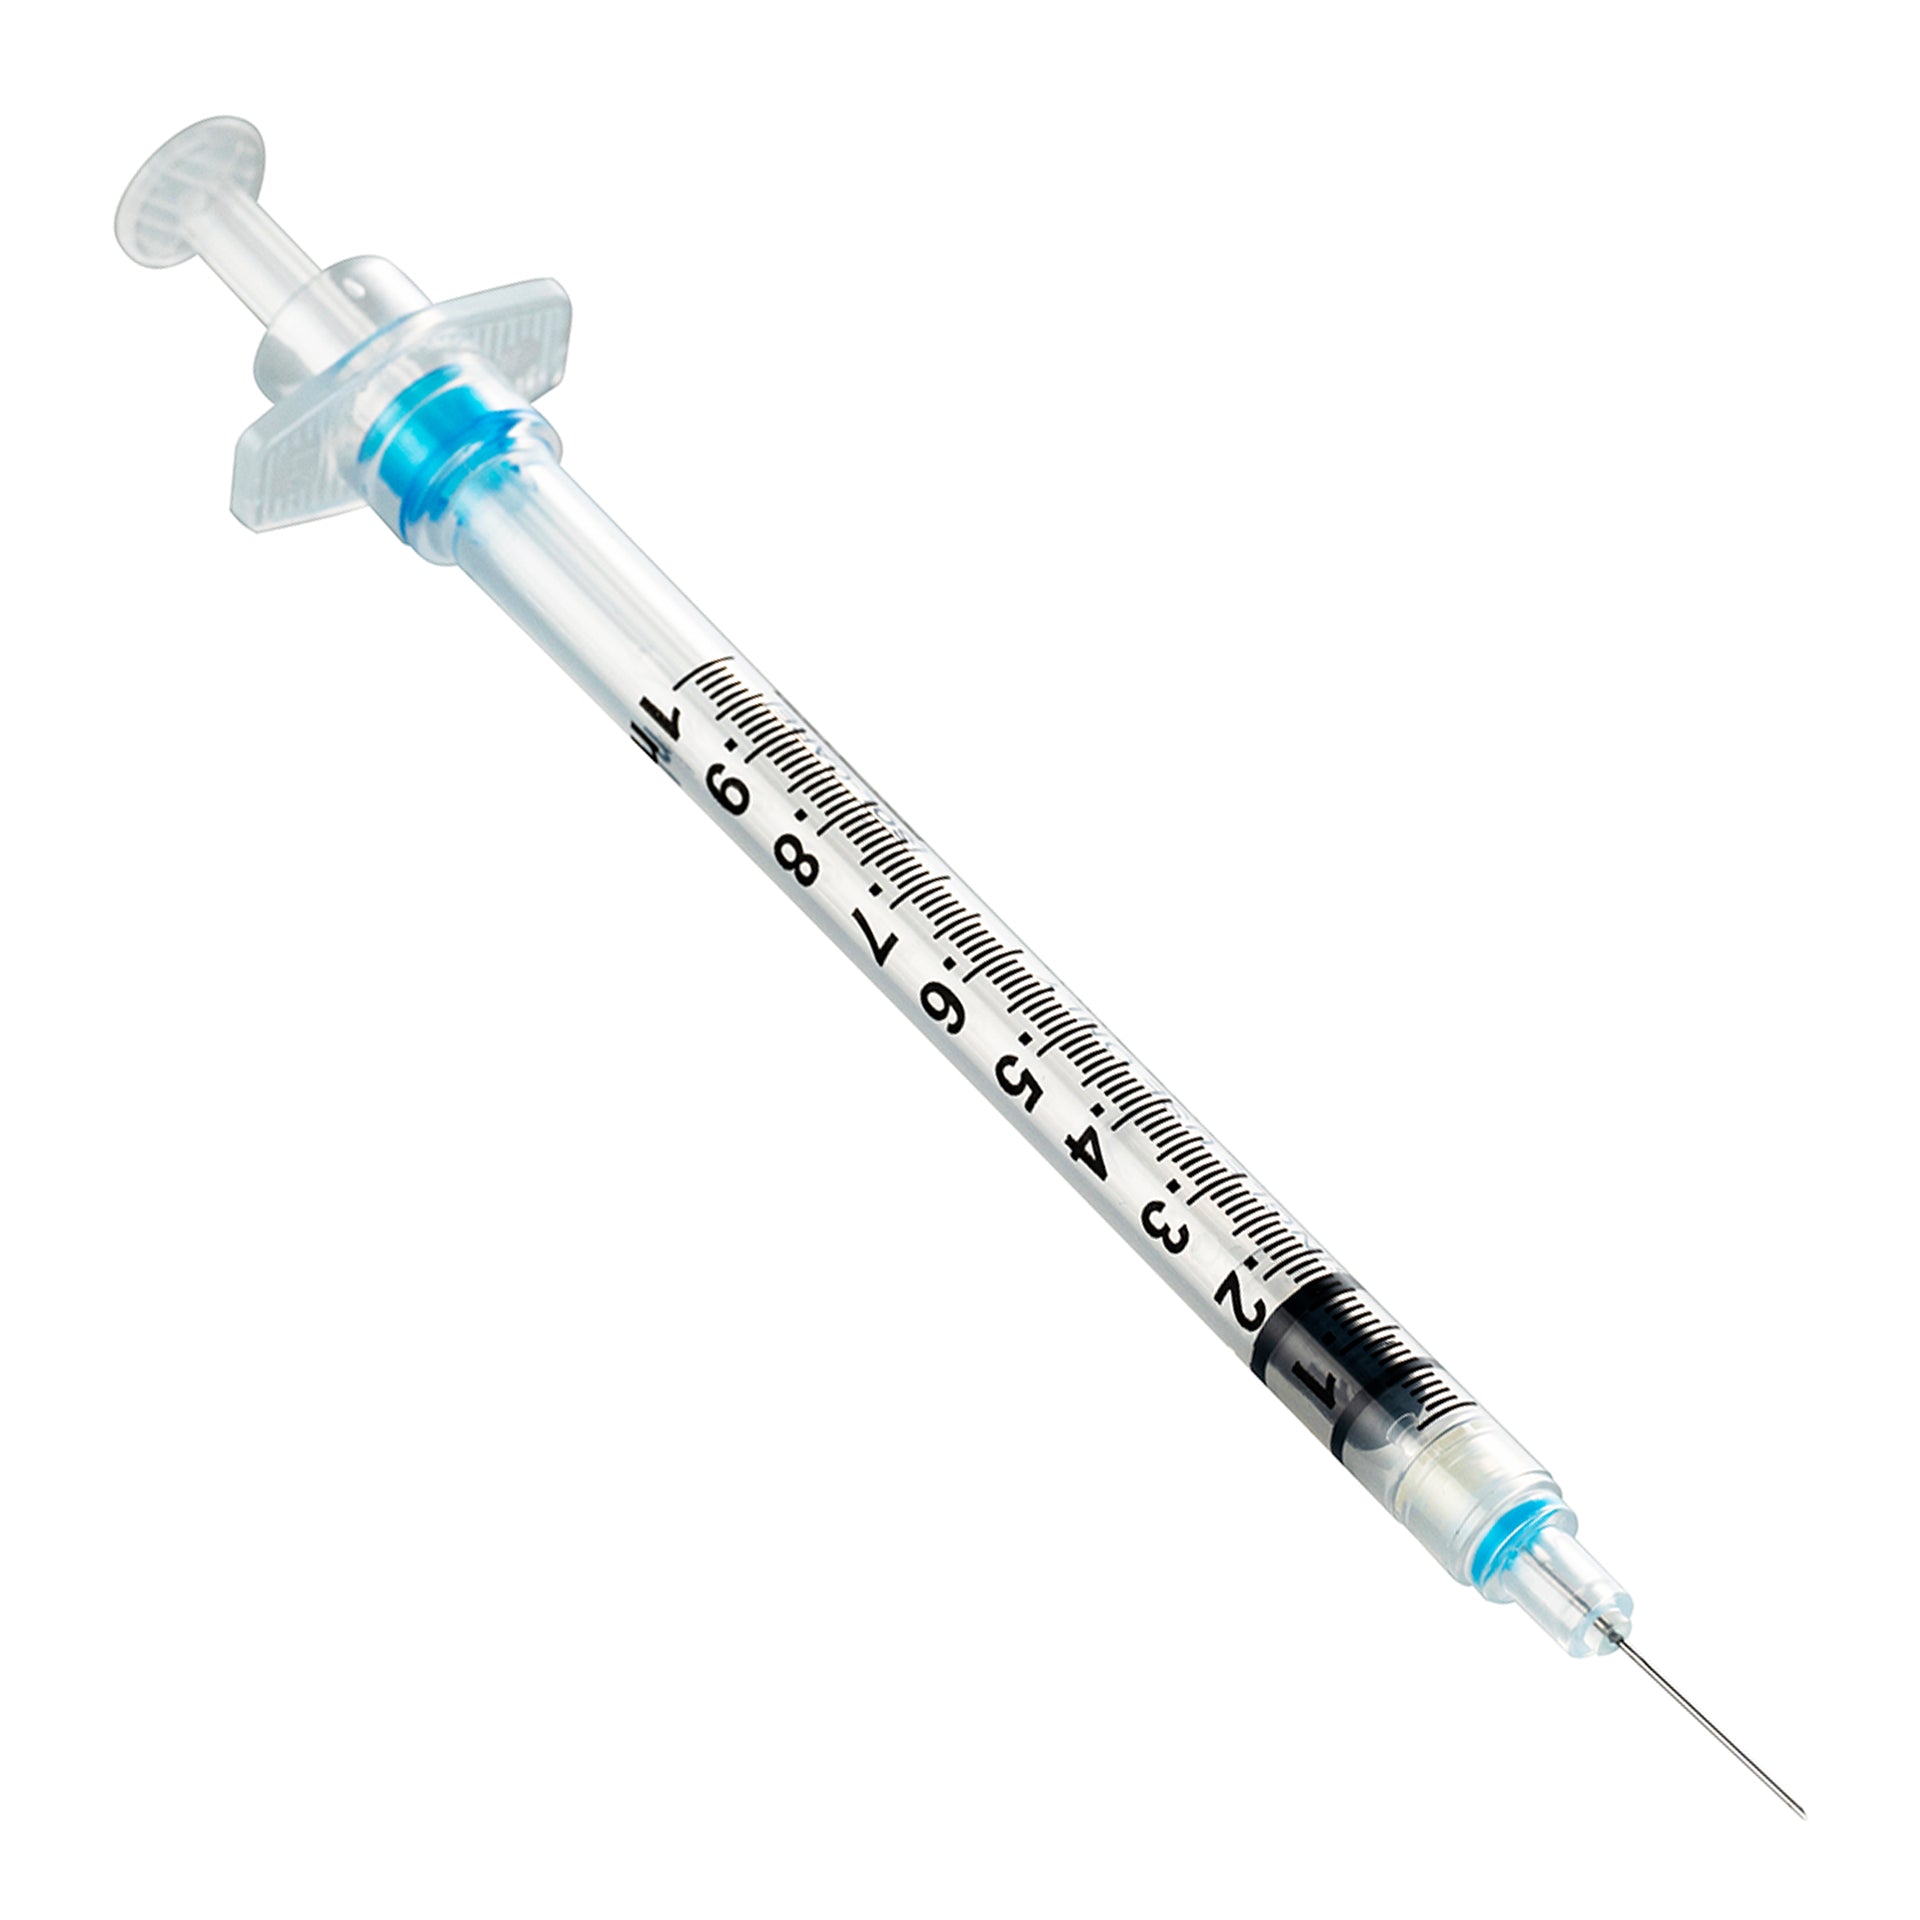 BX/100 - SOL-CARE 1ml TB Safety Syringe w/Fixed Needle 27G*1/2